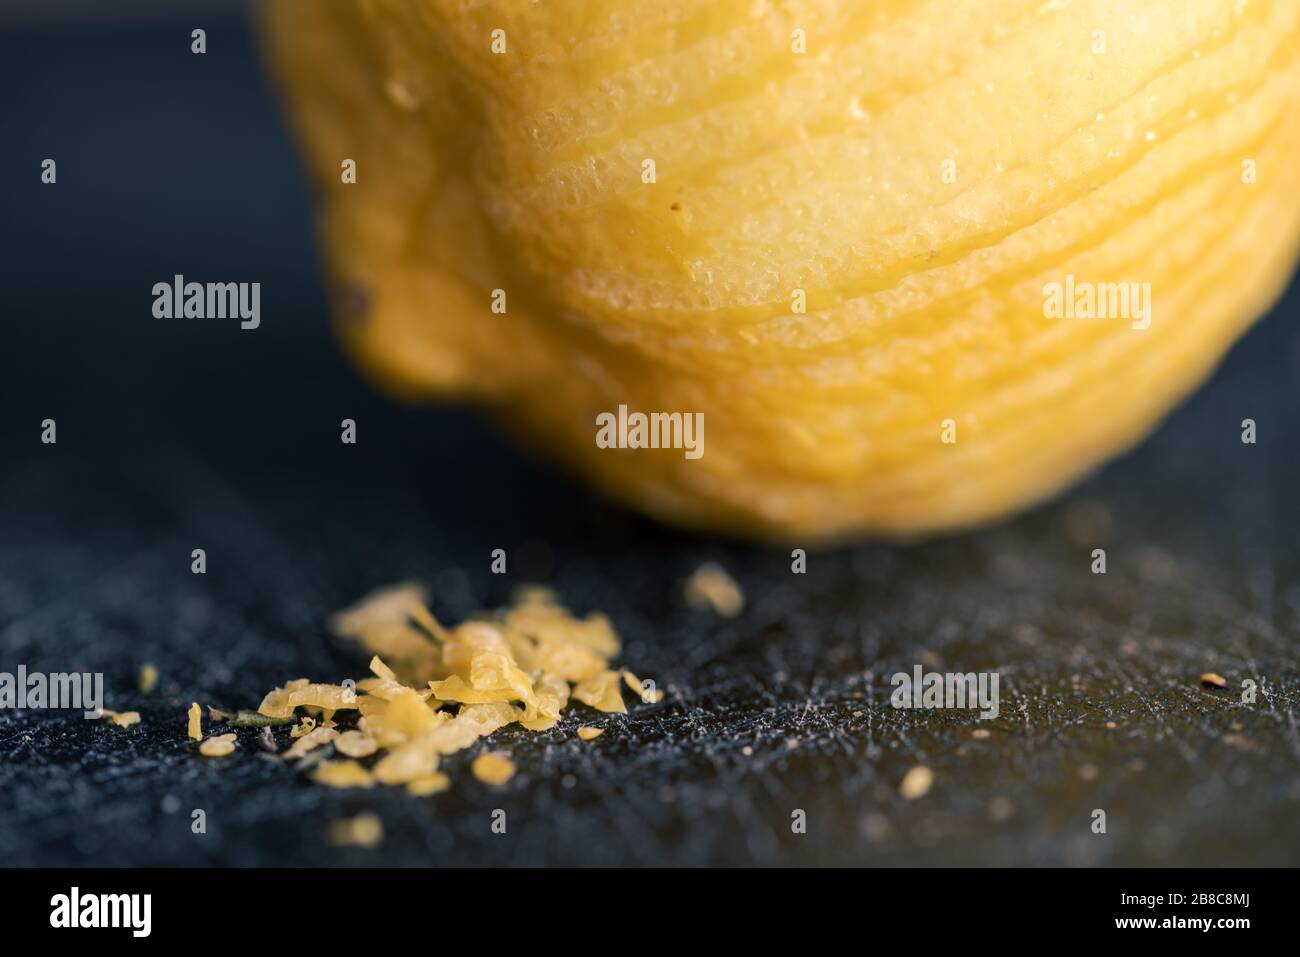 Détail de petits morceaux de zeste de citron avec le citron de laine en arrière-plan allongé sur le tableau noir de découpe Banque D'Images